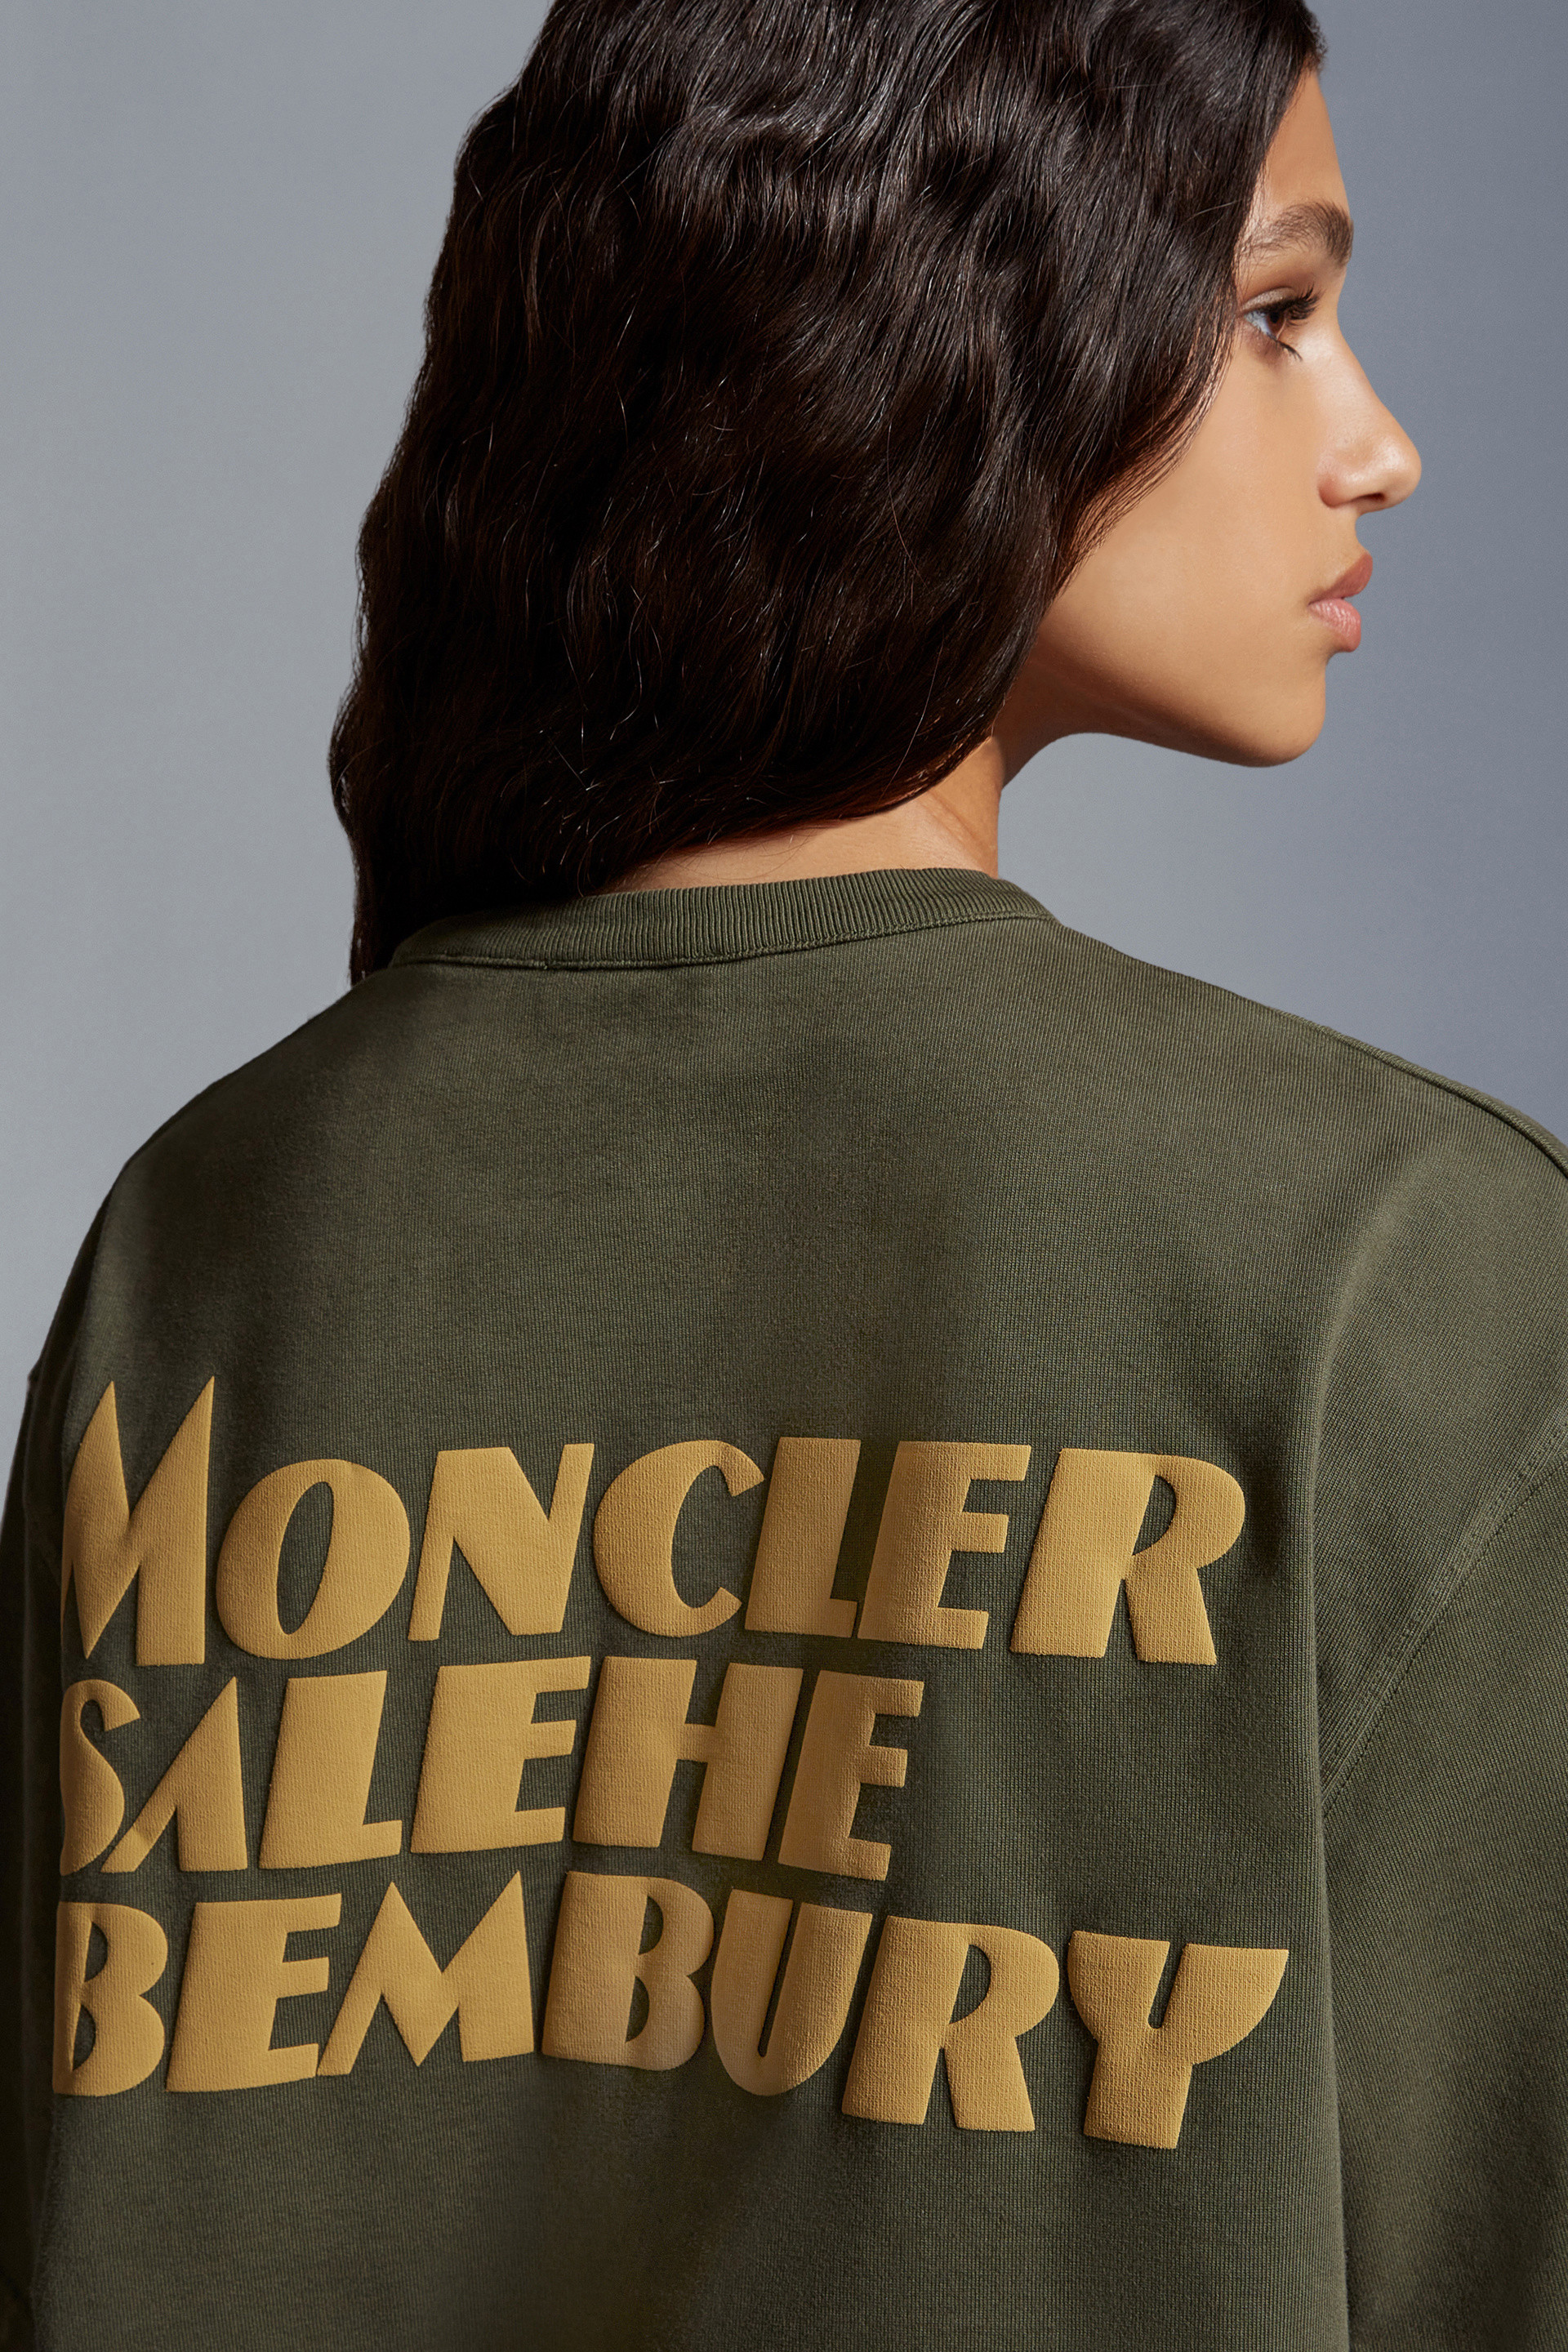 ダークグリーン Tシャツ : Moncler x Salehe Bembury 向けの Genius